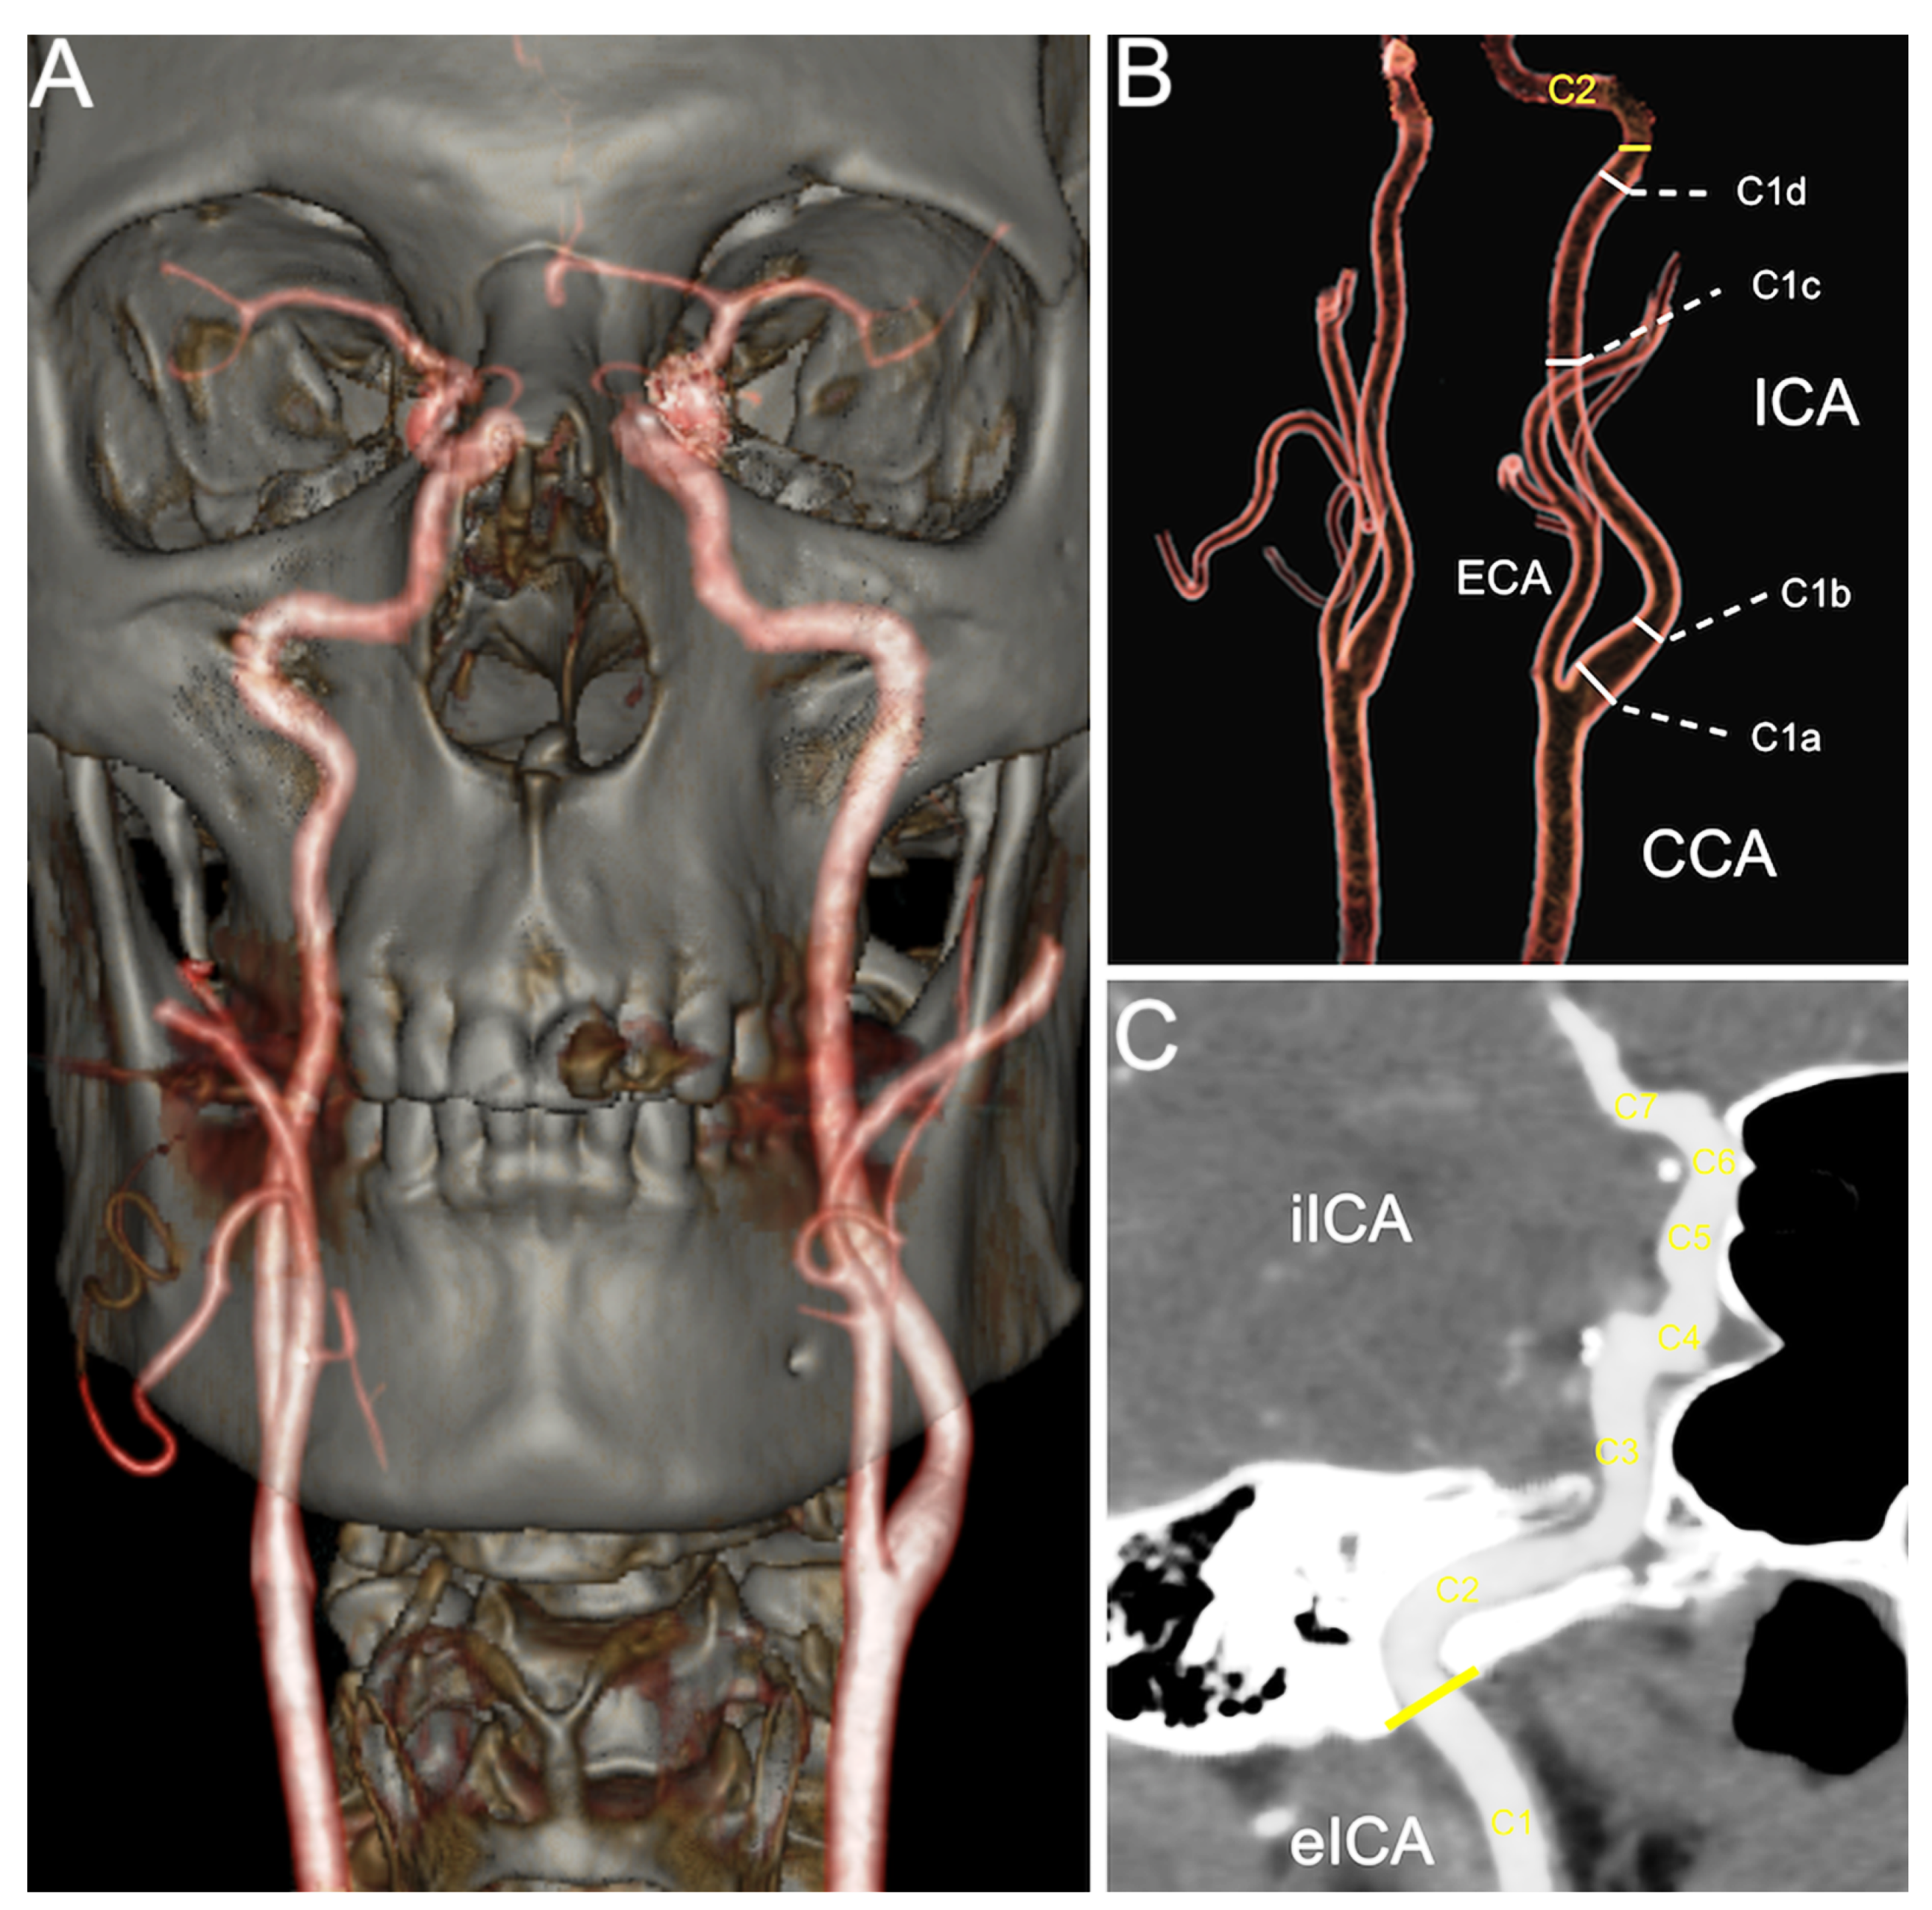 internal carotid artery skull